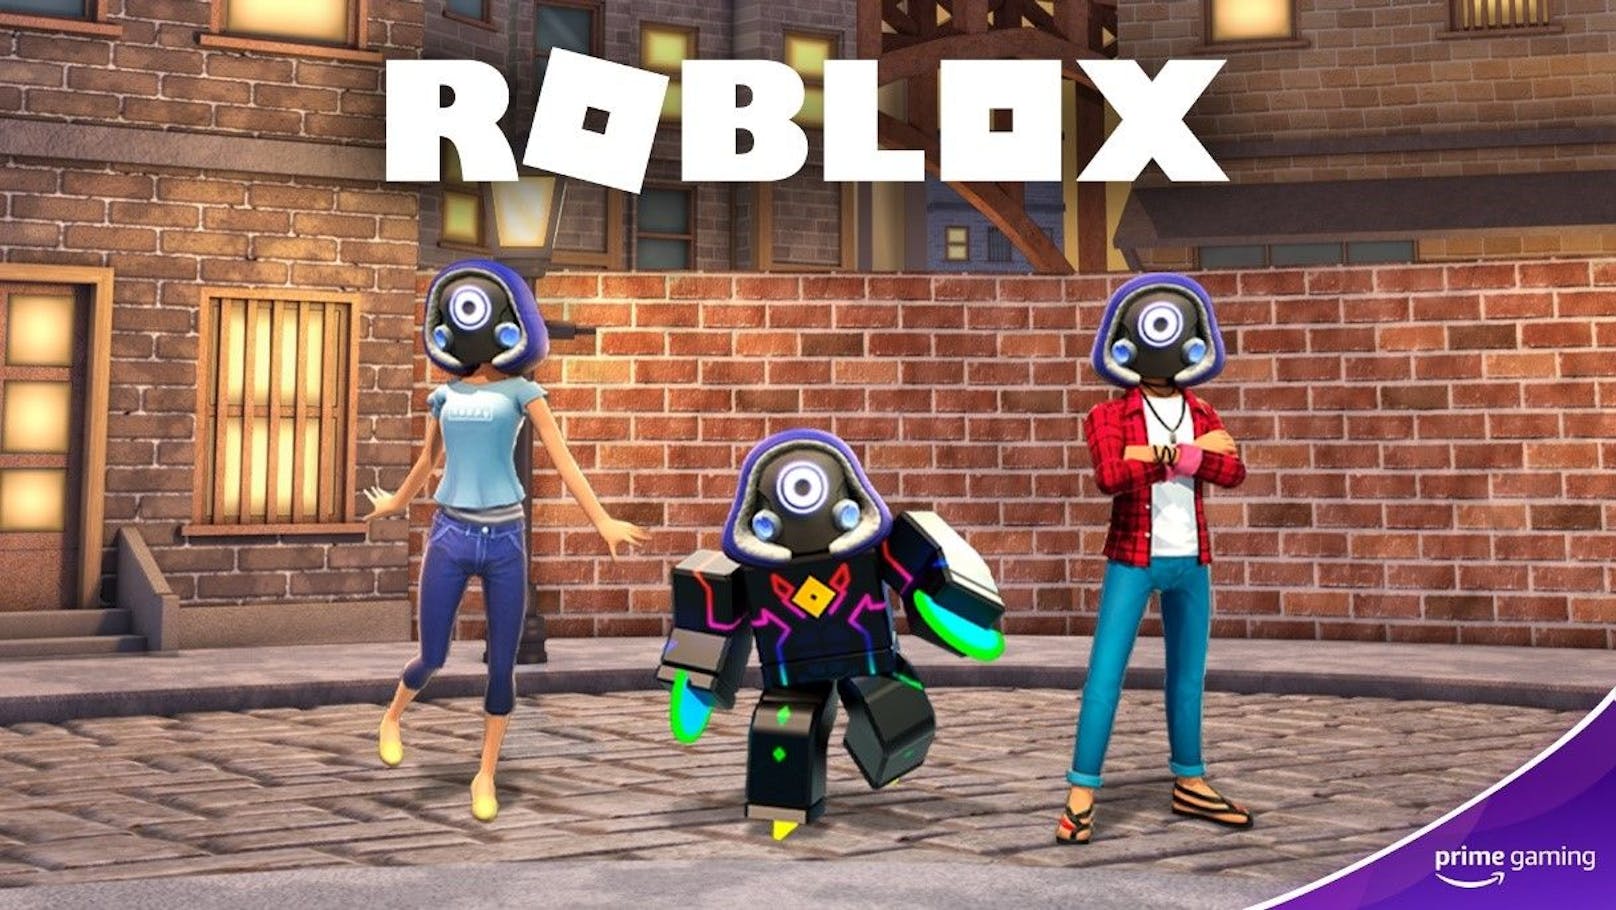 Exklusives Roblox-Bundle jetzt auf Prime Gaming verfügbar.